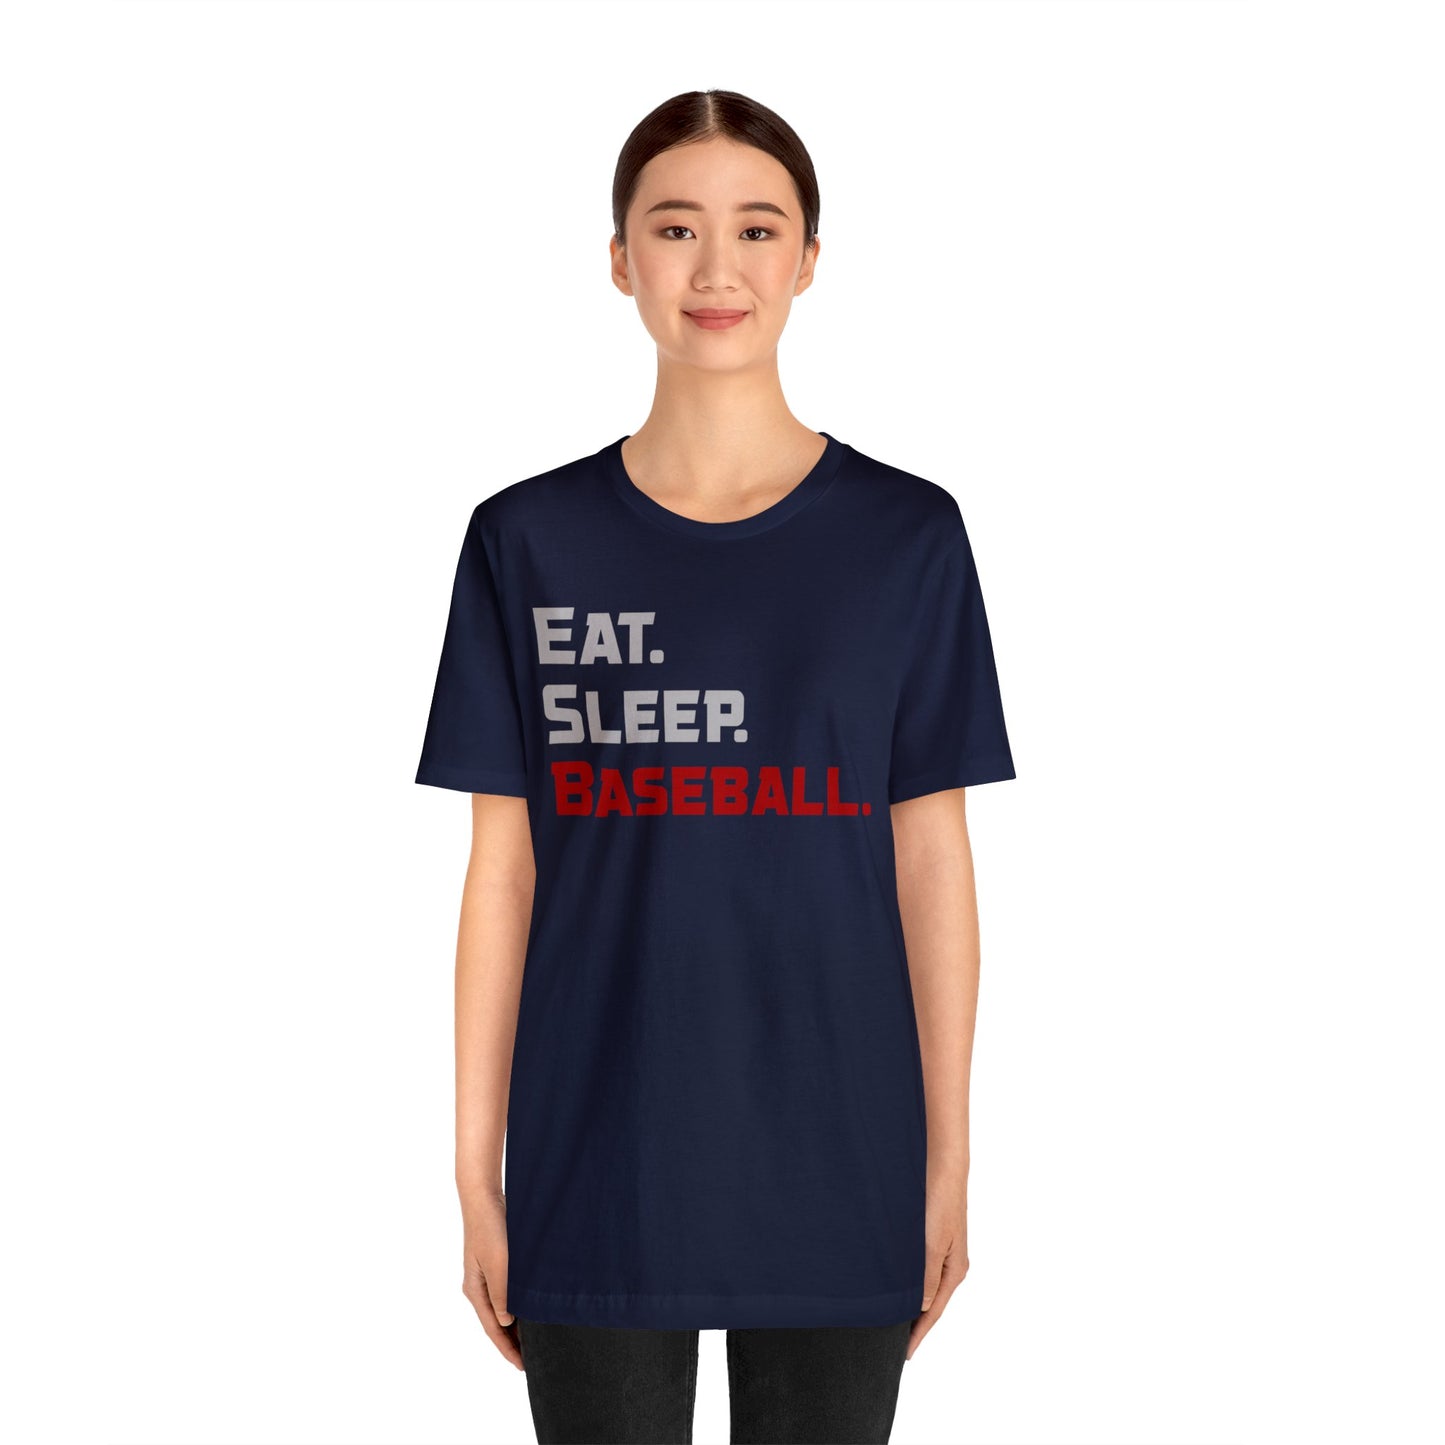 Eat. Sleep. Baseball. - T-shirt